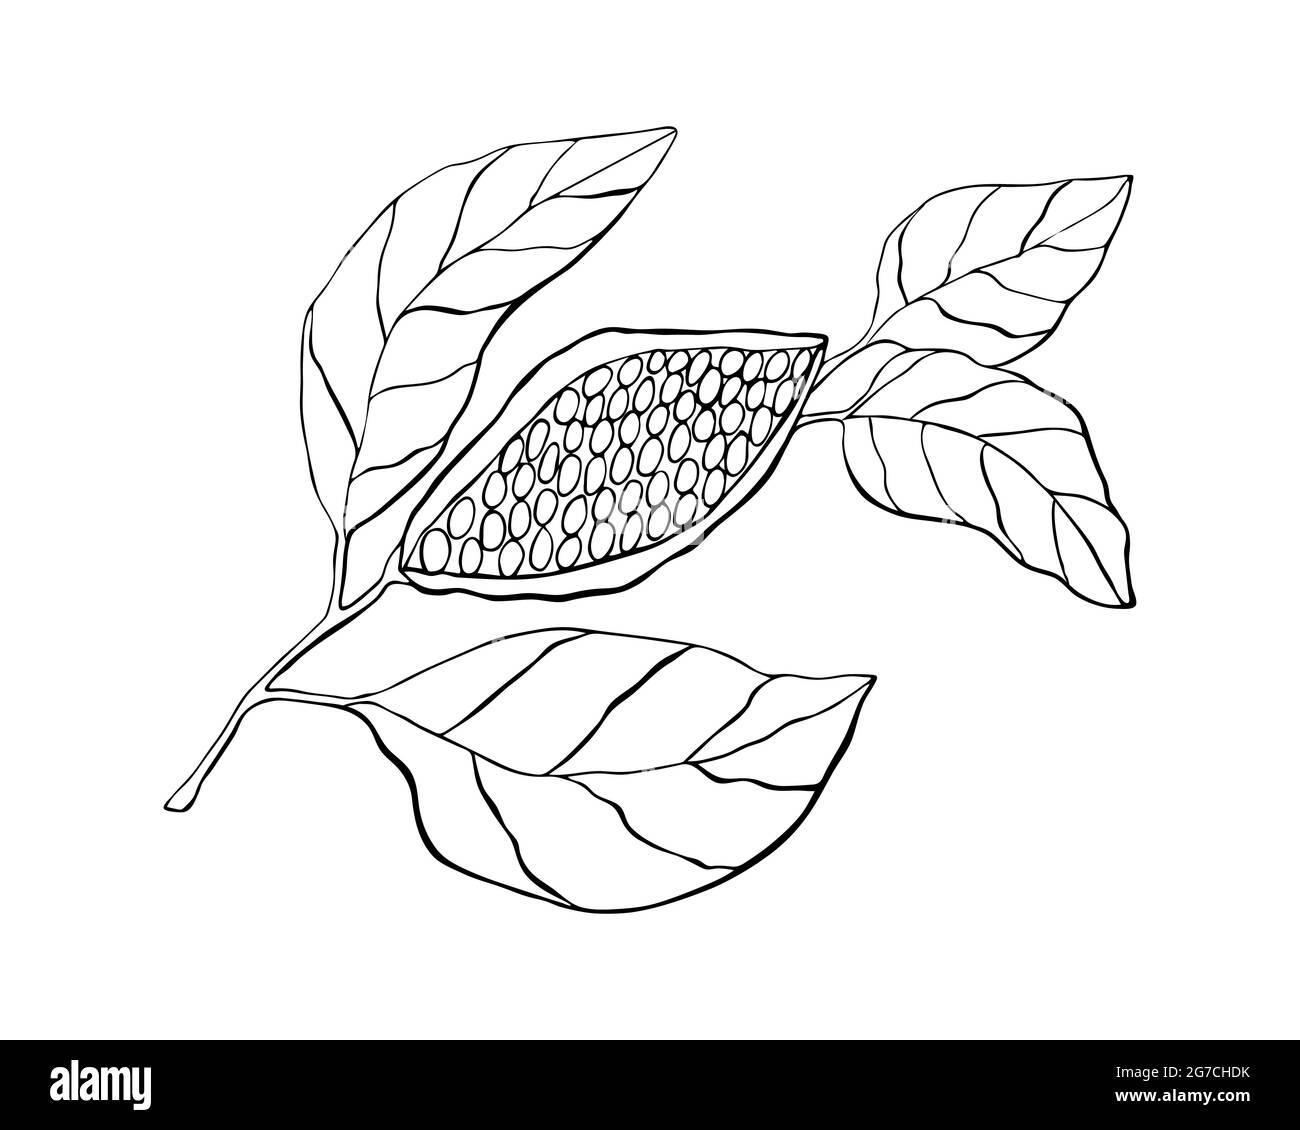 Kakaopflanze mit Früchten und Blättern, Handzeichnung, Kritzelei, schwarze Umrisslinie, isoliert auf weißem Hintergrund. Vektorgrafik Stock Vektor